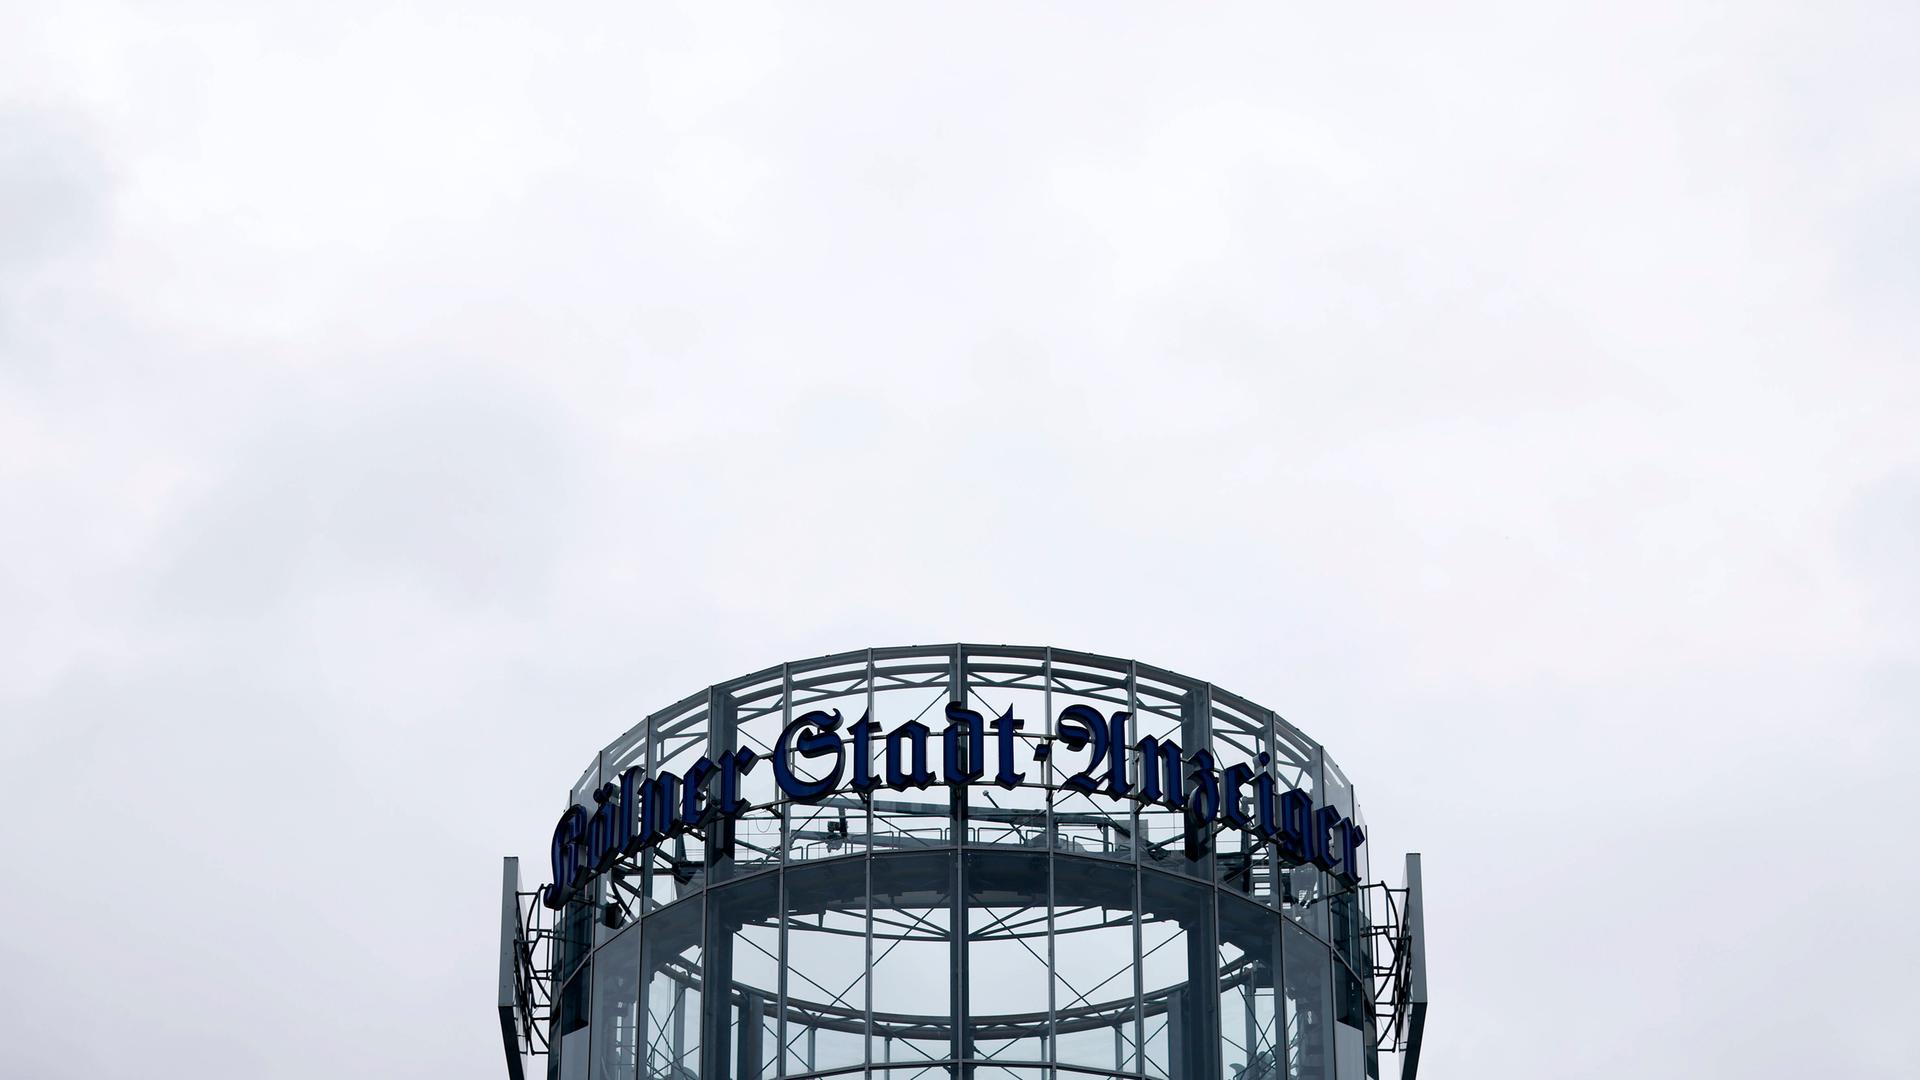 Der Turm des Neven DuMont Hauses in Köln mit der Aufschrift "Kölner Stadt-Anzeiger".